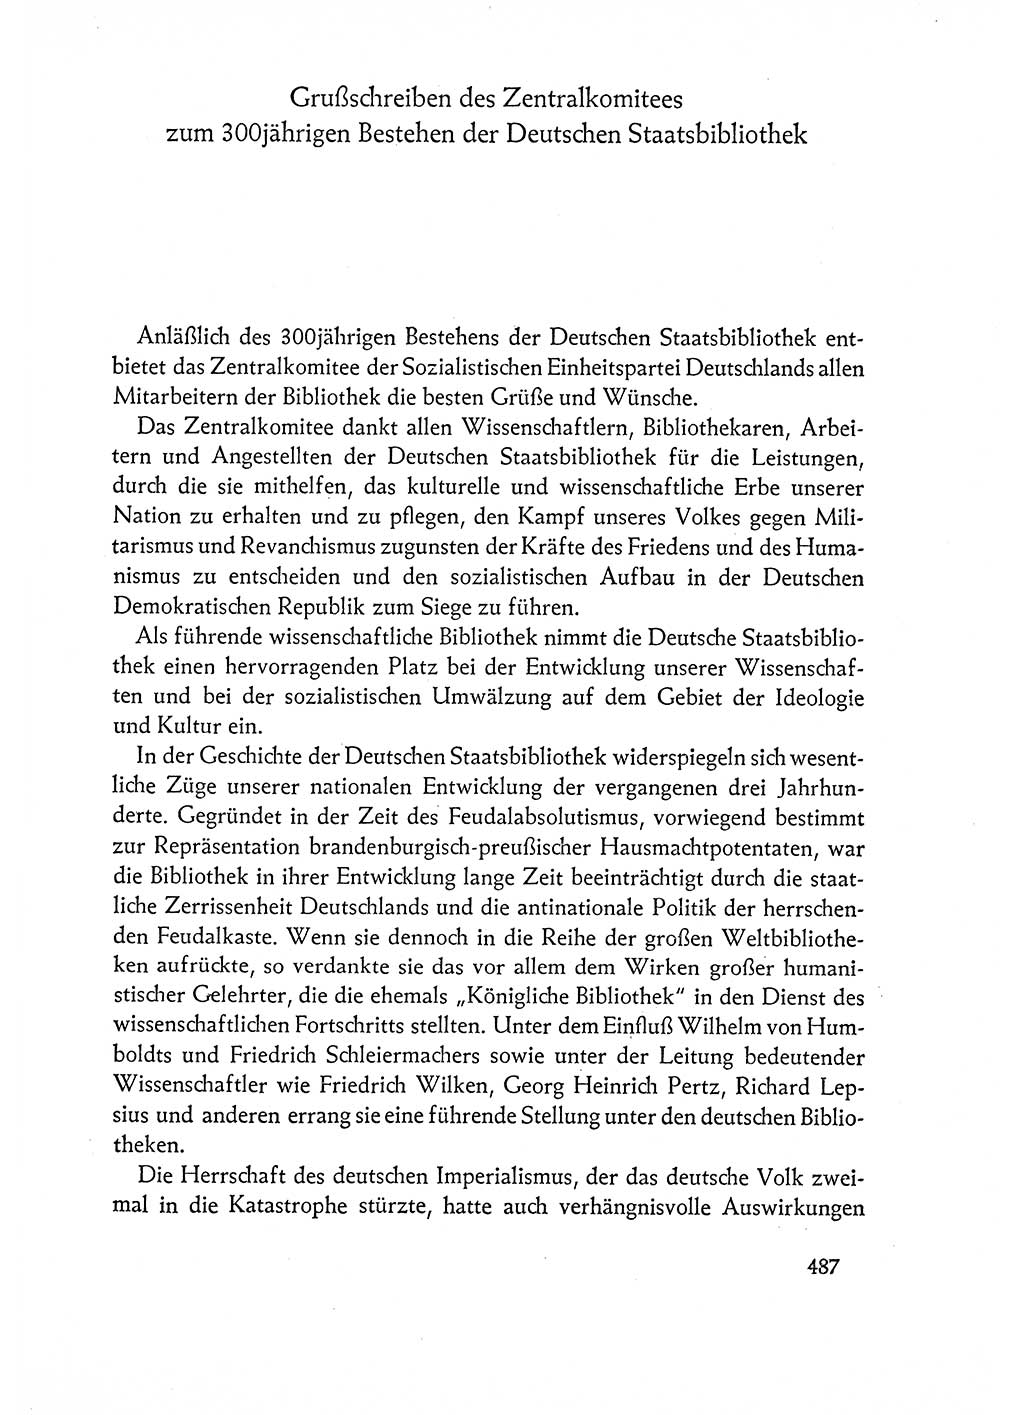 Dokumente der Sozialistischen Einheitspartei Deutschlands (SED) [Deutsche Demokratische Republik (DDR)] 1960-1961, Seite 487 (Dok. SED DDR 1960-1961, S. 487)